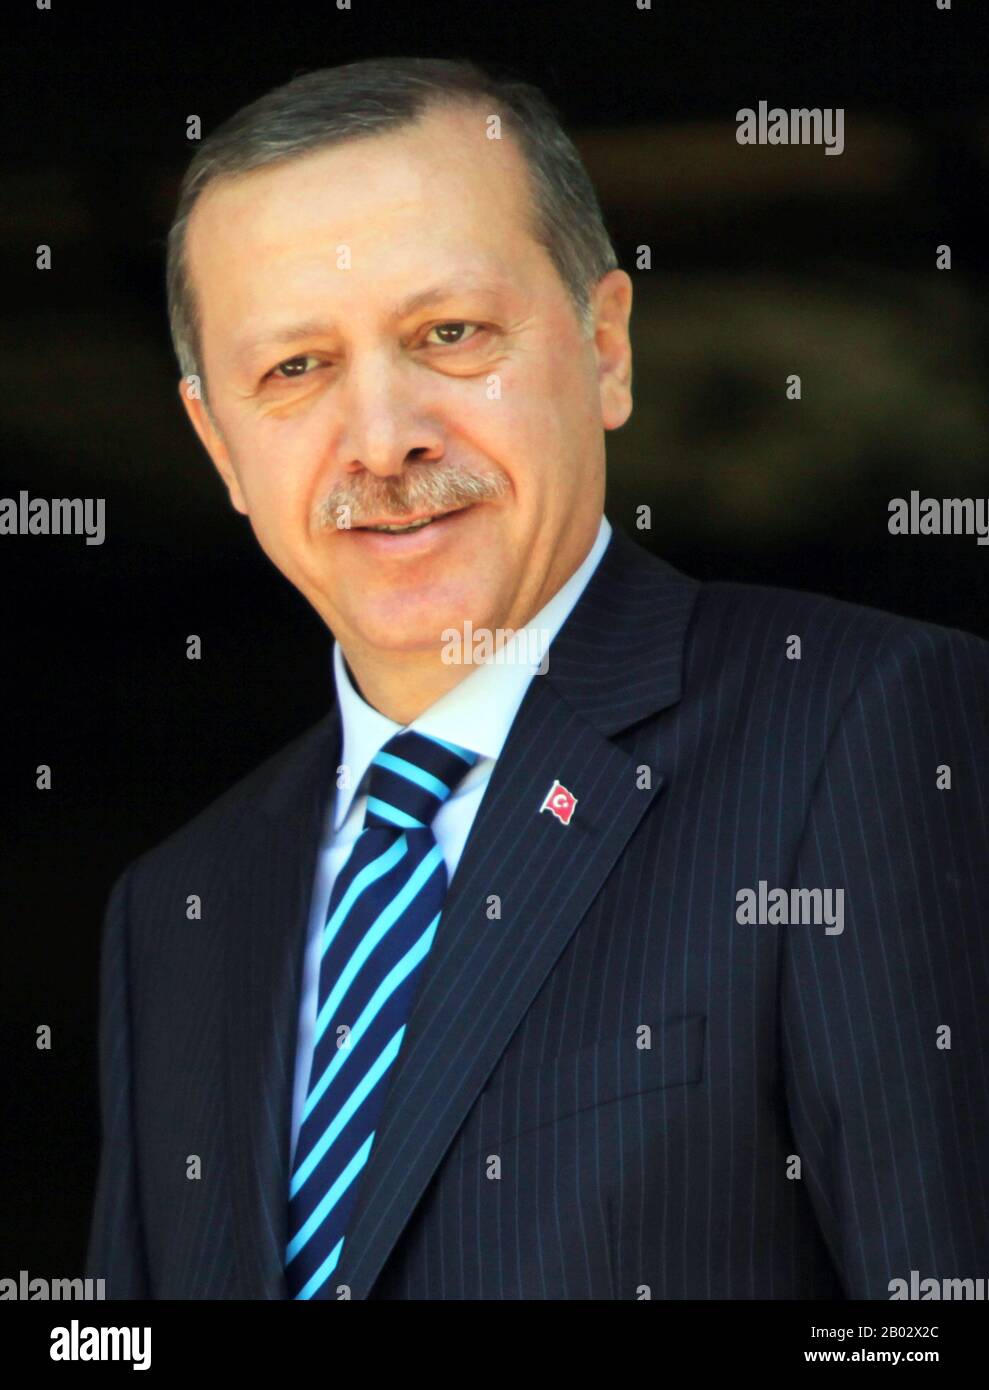 Recep Tayyip Erdogan (* 26. Februar 1954) ist der 12. Und aktuelle Präsident der Türkei, seit 2014 im Amt. Zuvor war er von 2003 bis 2014 Premierminister der Türkei und von 1994 bis 1998 Bürgermeister von Istanbul. Aus einem islamischen politischen Hintergrund stammend und als konservativer Demokrat behauptete, hat seine Regierung die liberale Wirtschafts- und sozialkonservative Politik überwacht. Stockfoto